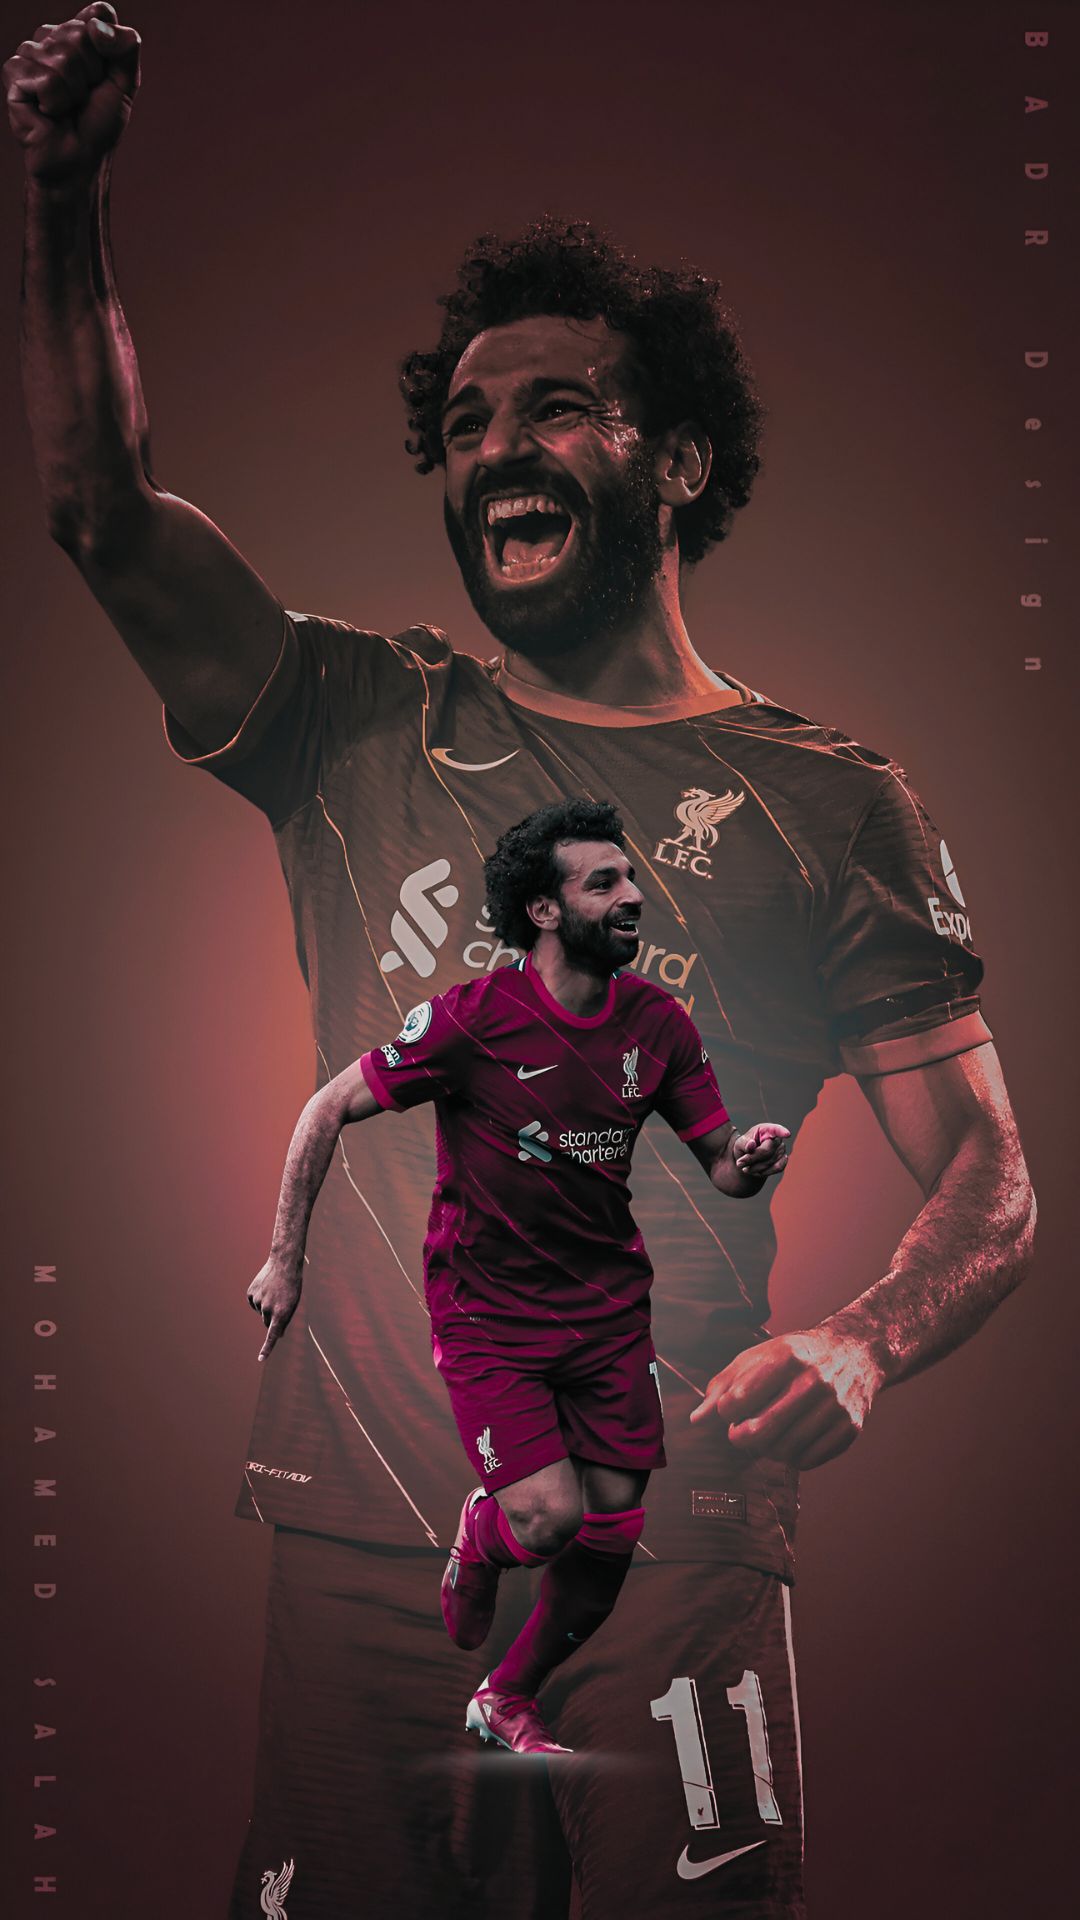 Mohamed Salah Wallpaper HD